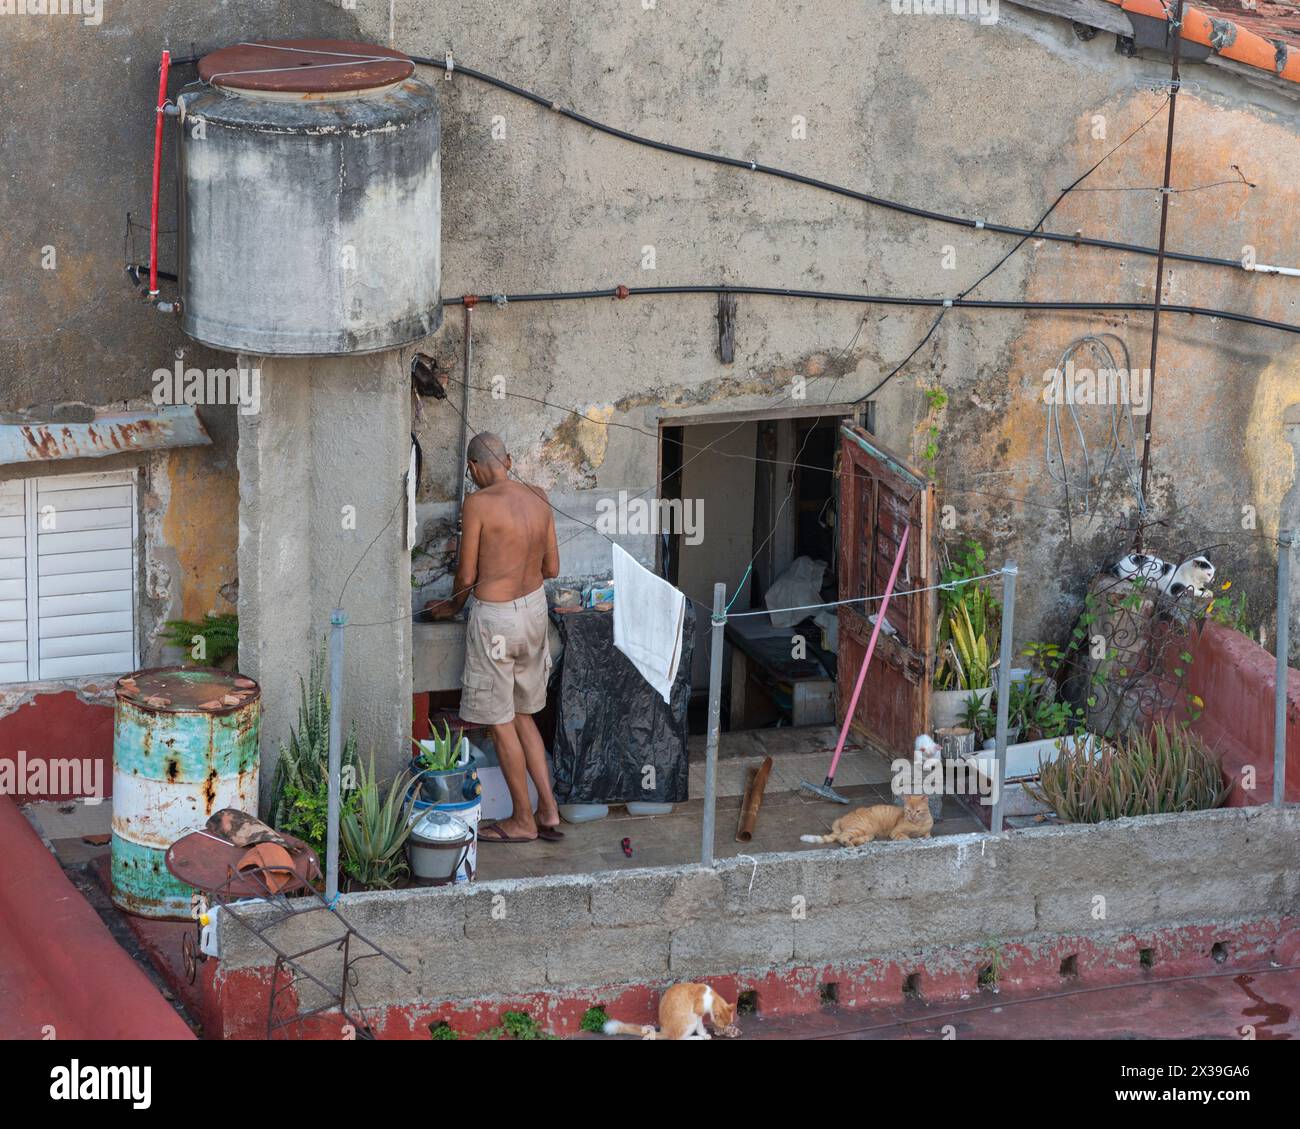 Une cour appauvrie des résidents locaux / jardin sur le toit surplombant un hôtel dans le centre de Cienfuegos, Cuba Banque D'Images